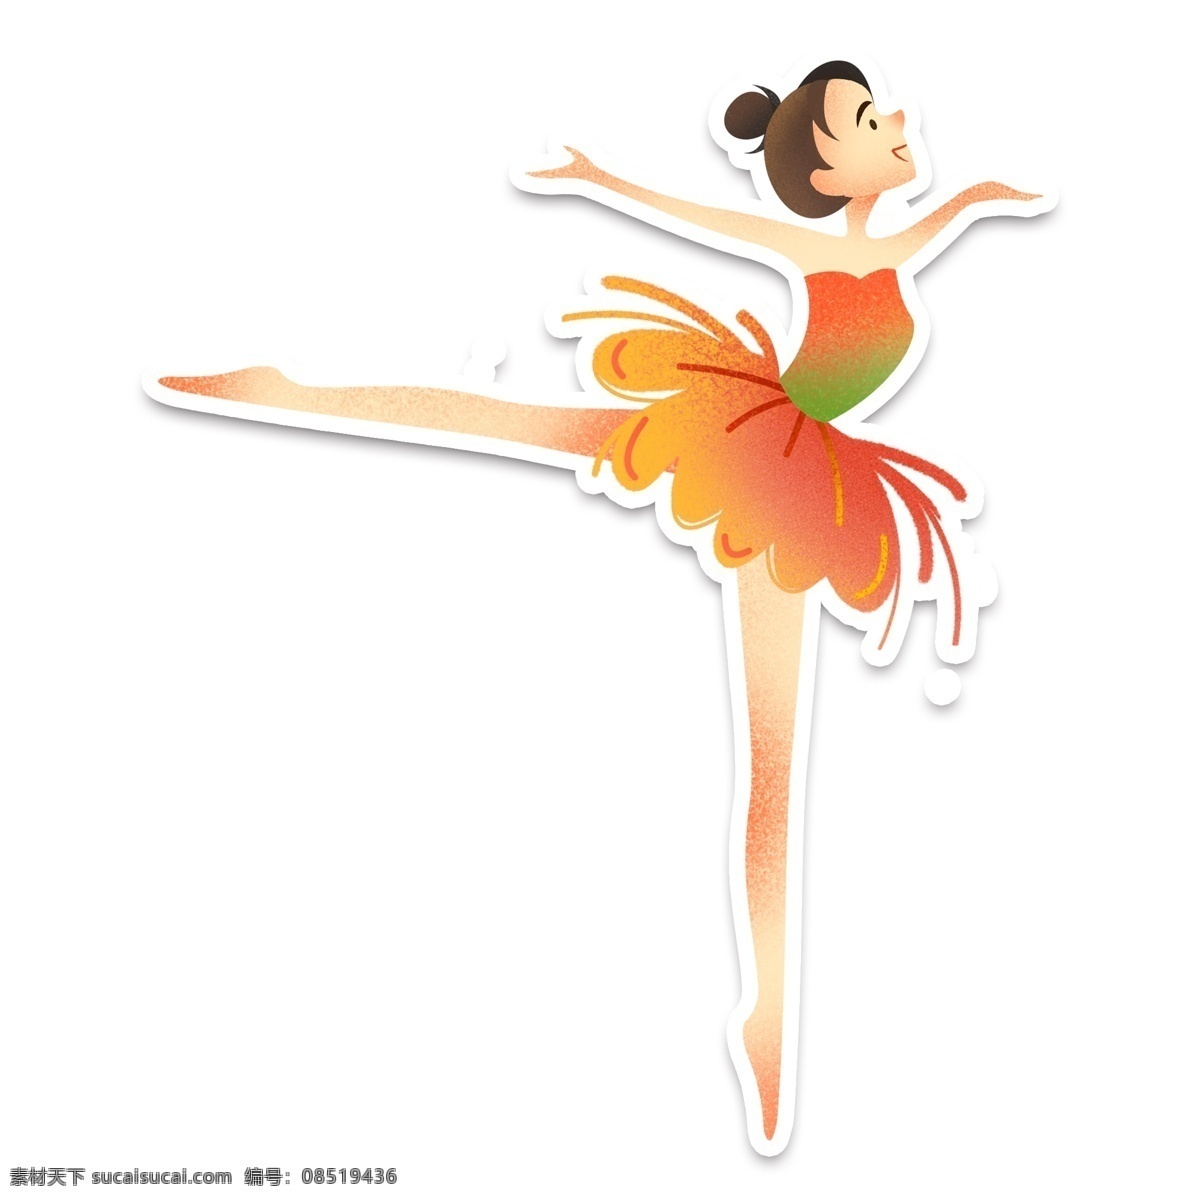 芭蕾 舞蹈演员 装饰 元素 装饰元素 手绘 舞蹈 跳舞 美丽 少女